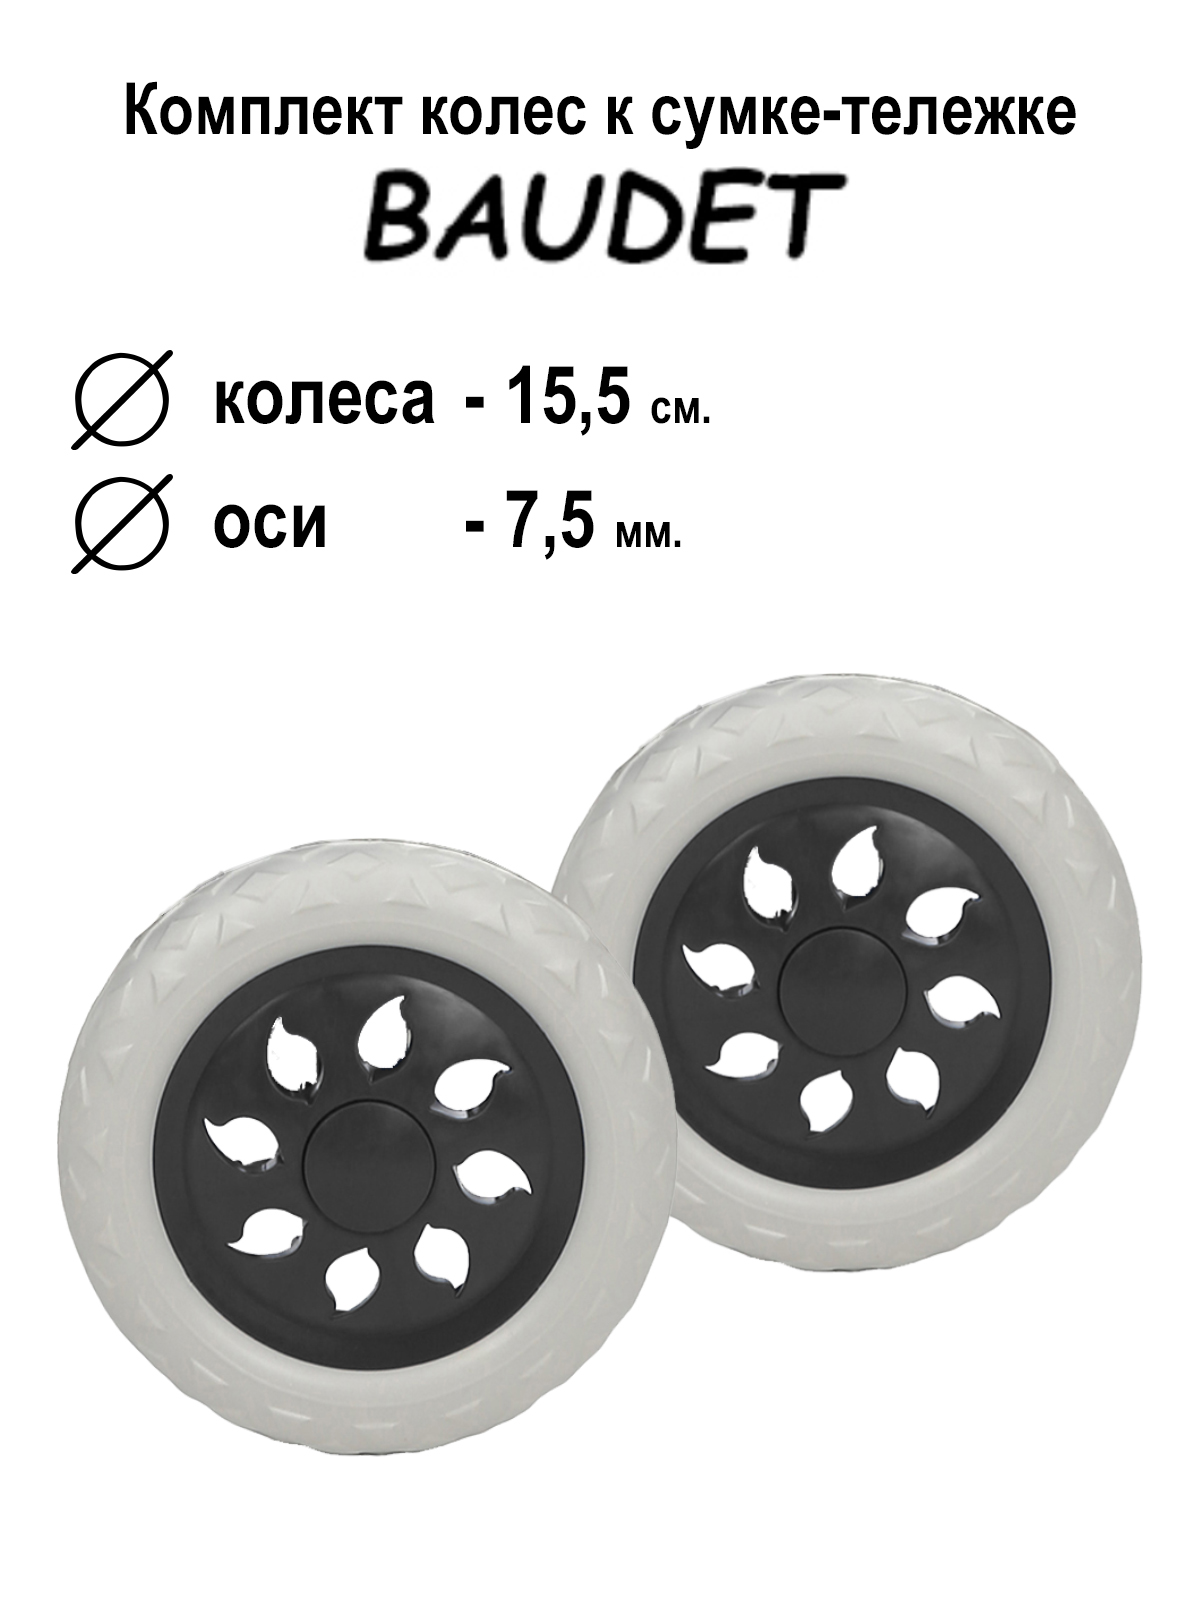 Комплект колес для сумки-тележки хозяйственной Baudet 007 белый/черный